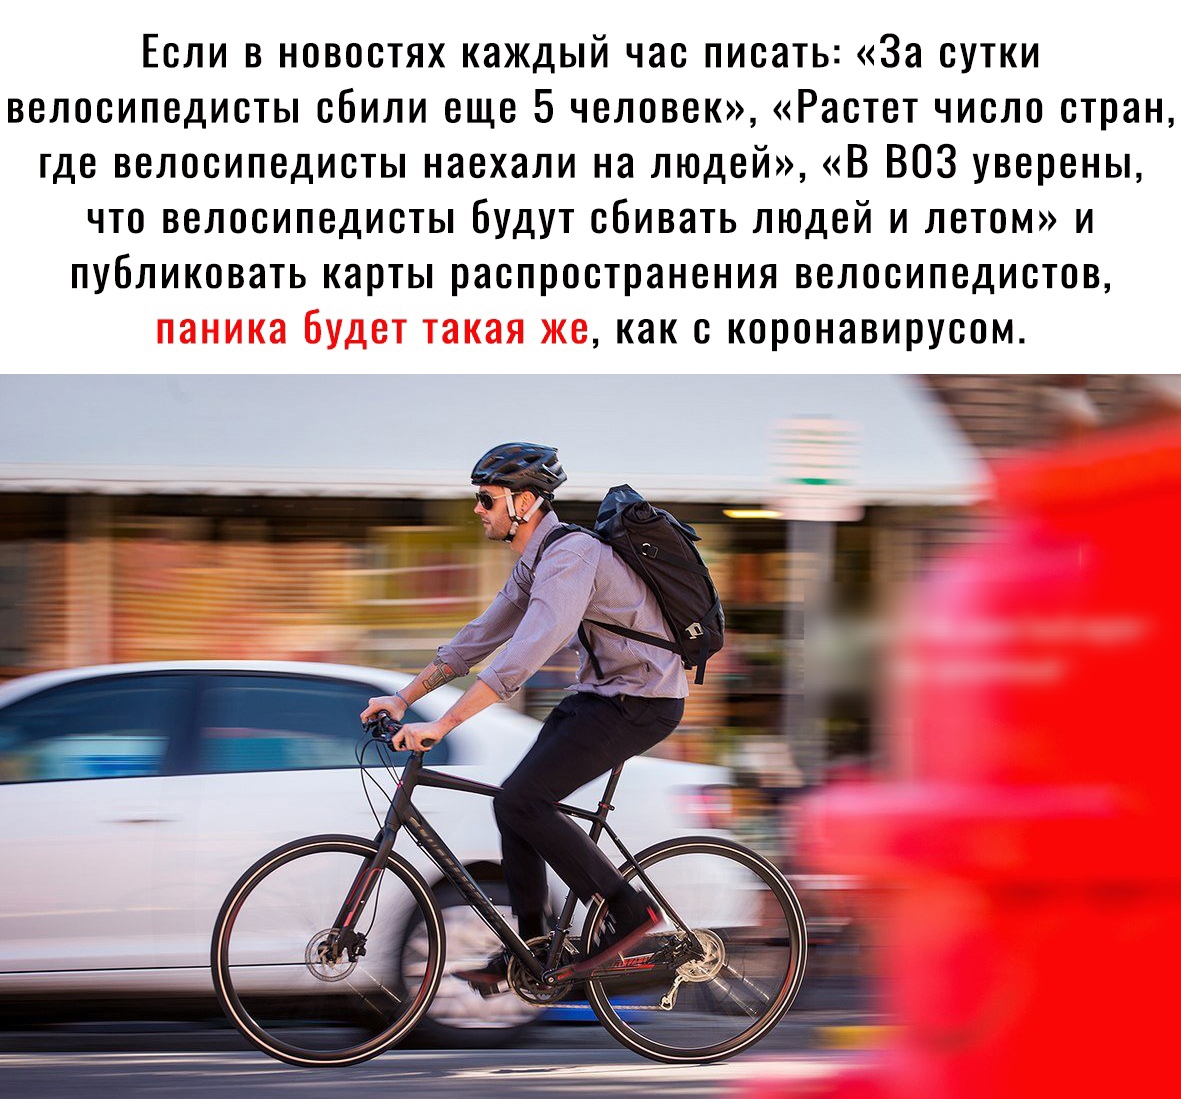 Едущий на велосипеде велосипедист. Городской велосипед люди. Мужчина едет на велосипеде. Велосипедист едет. Человек на велосипеде.